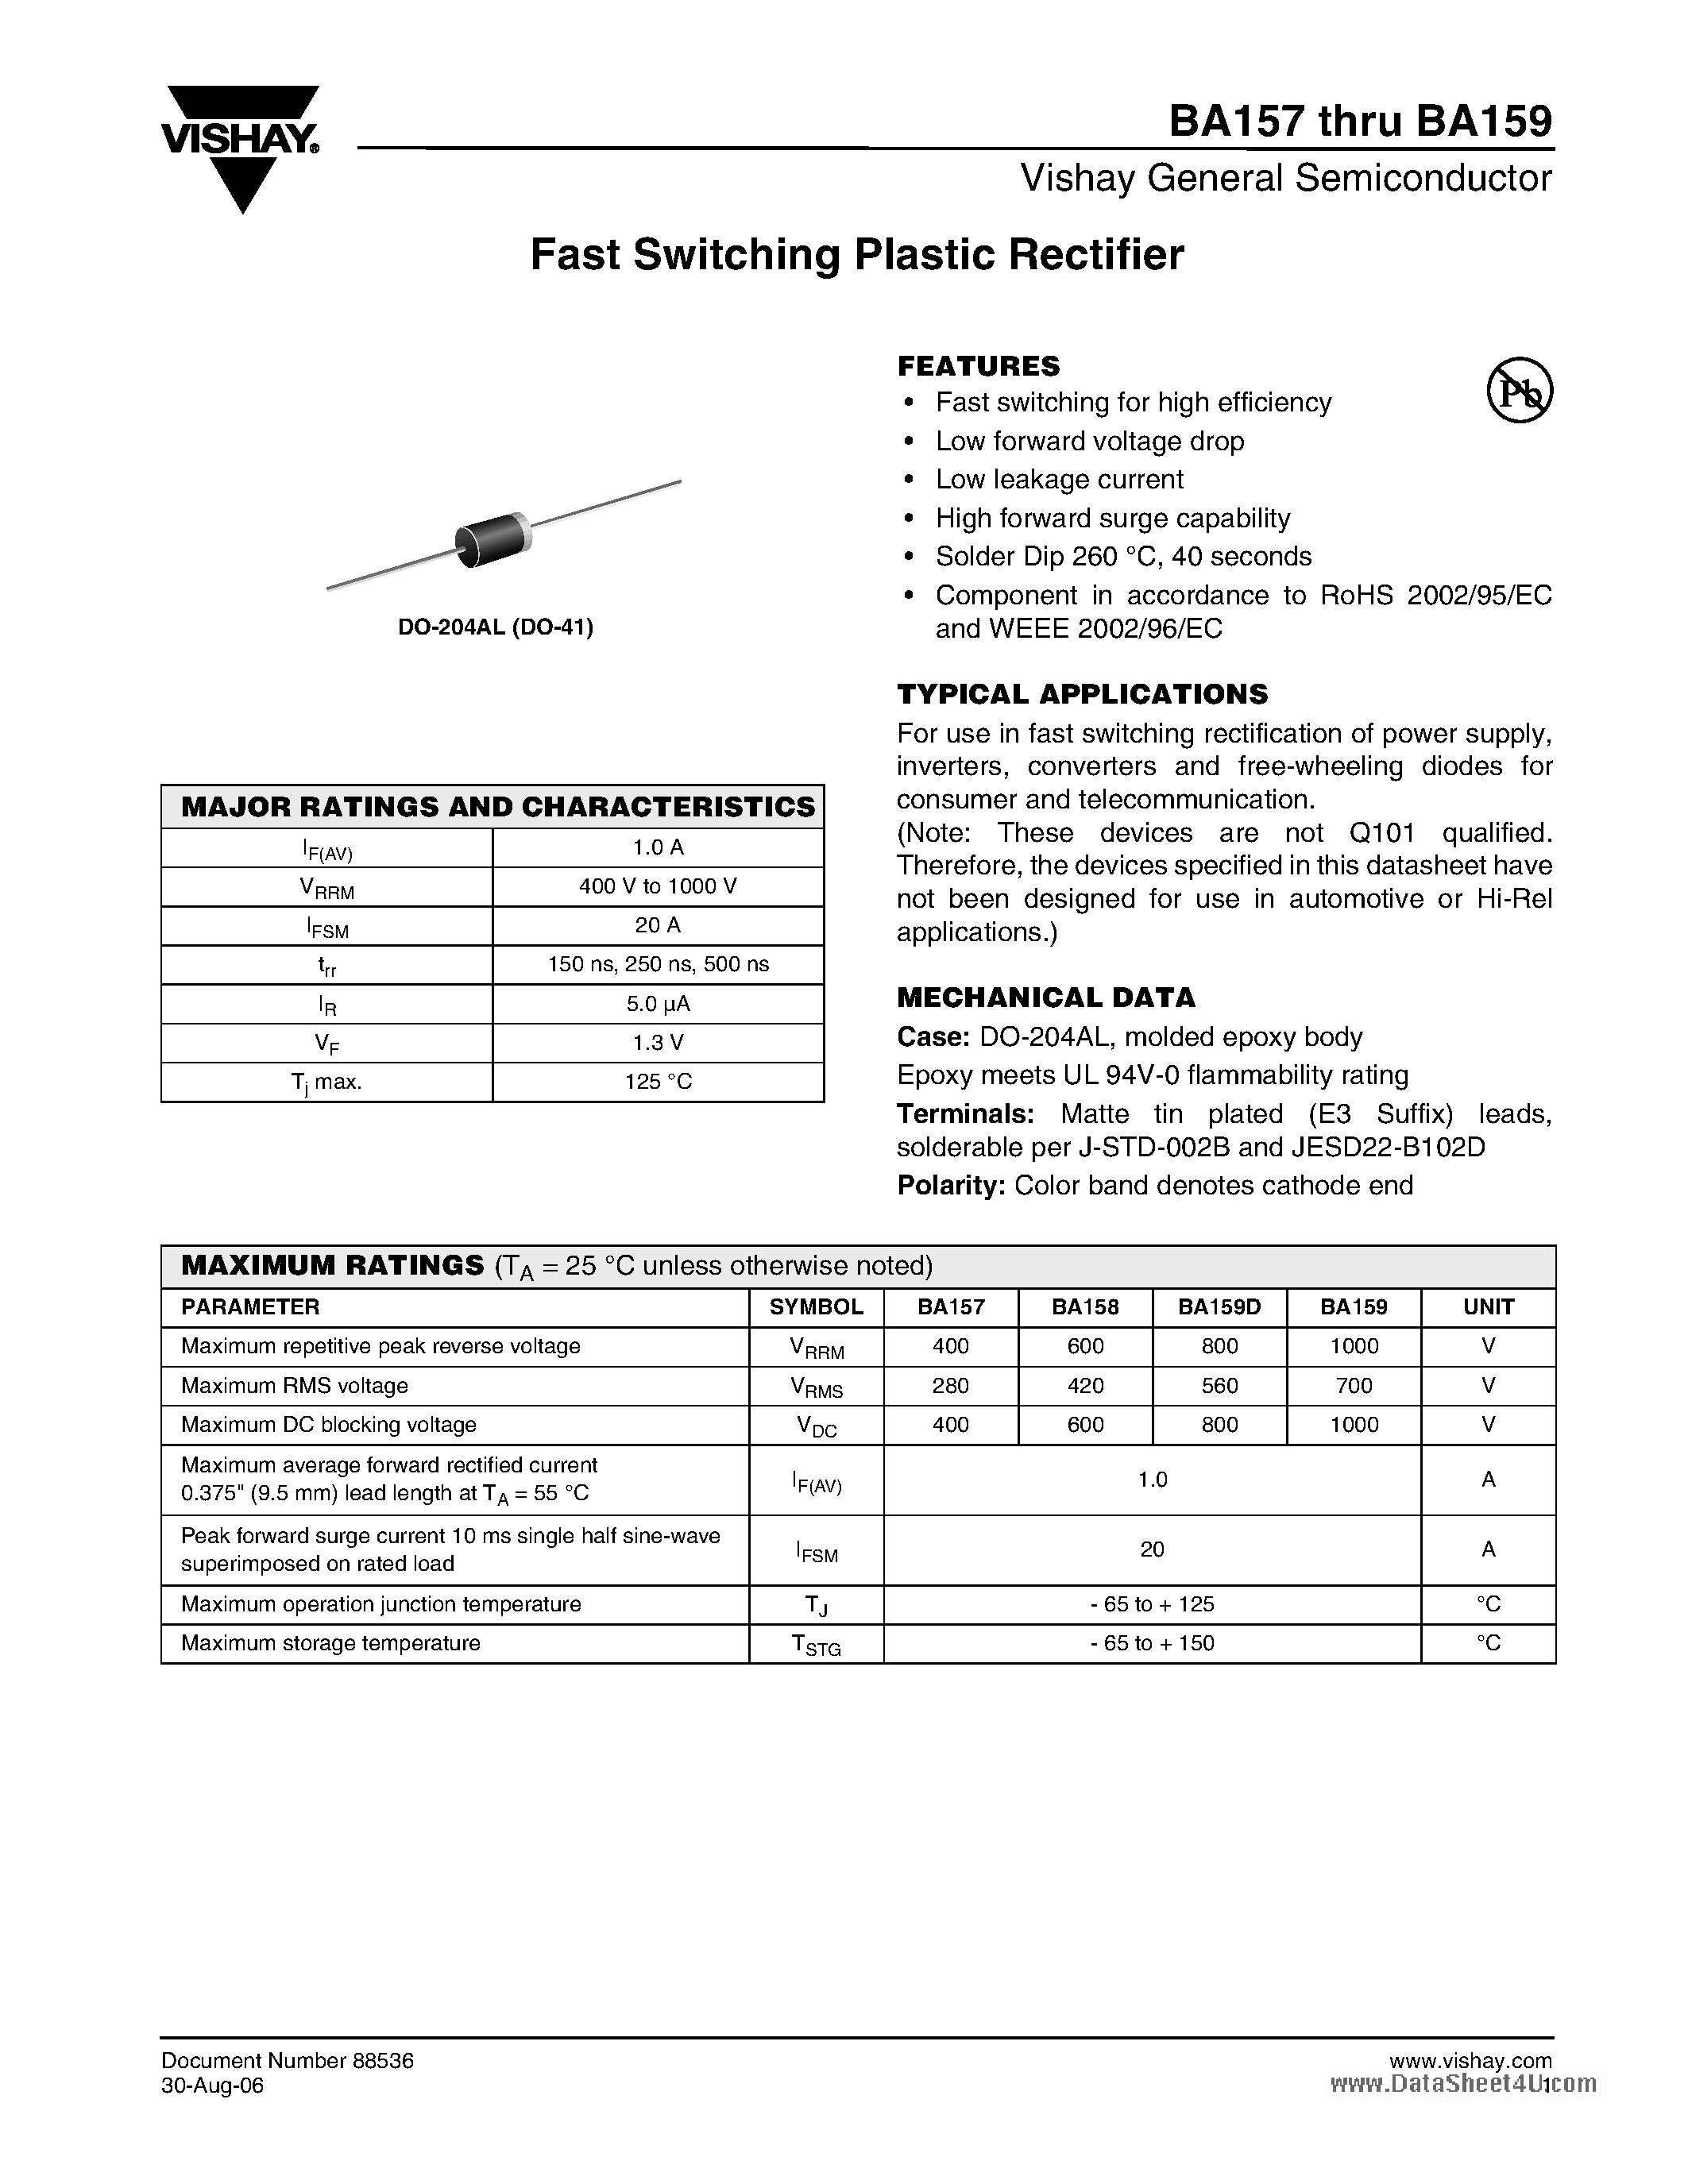 Даташит BA157 - (BA157 - BA159) Fast Switching Plastic Rectifier страница 1